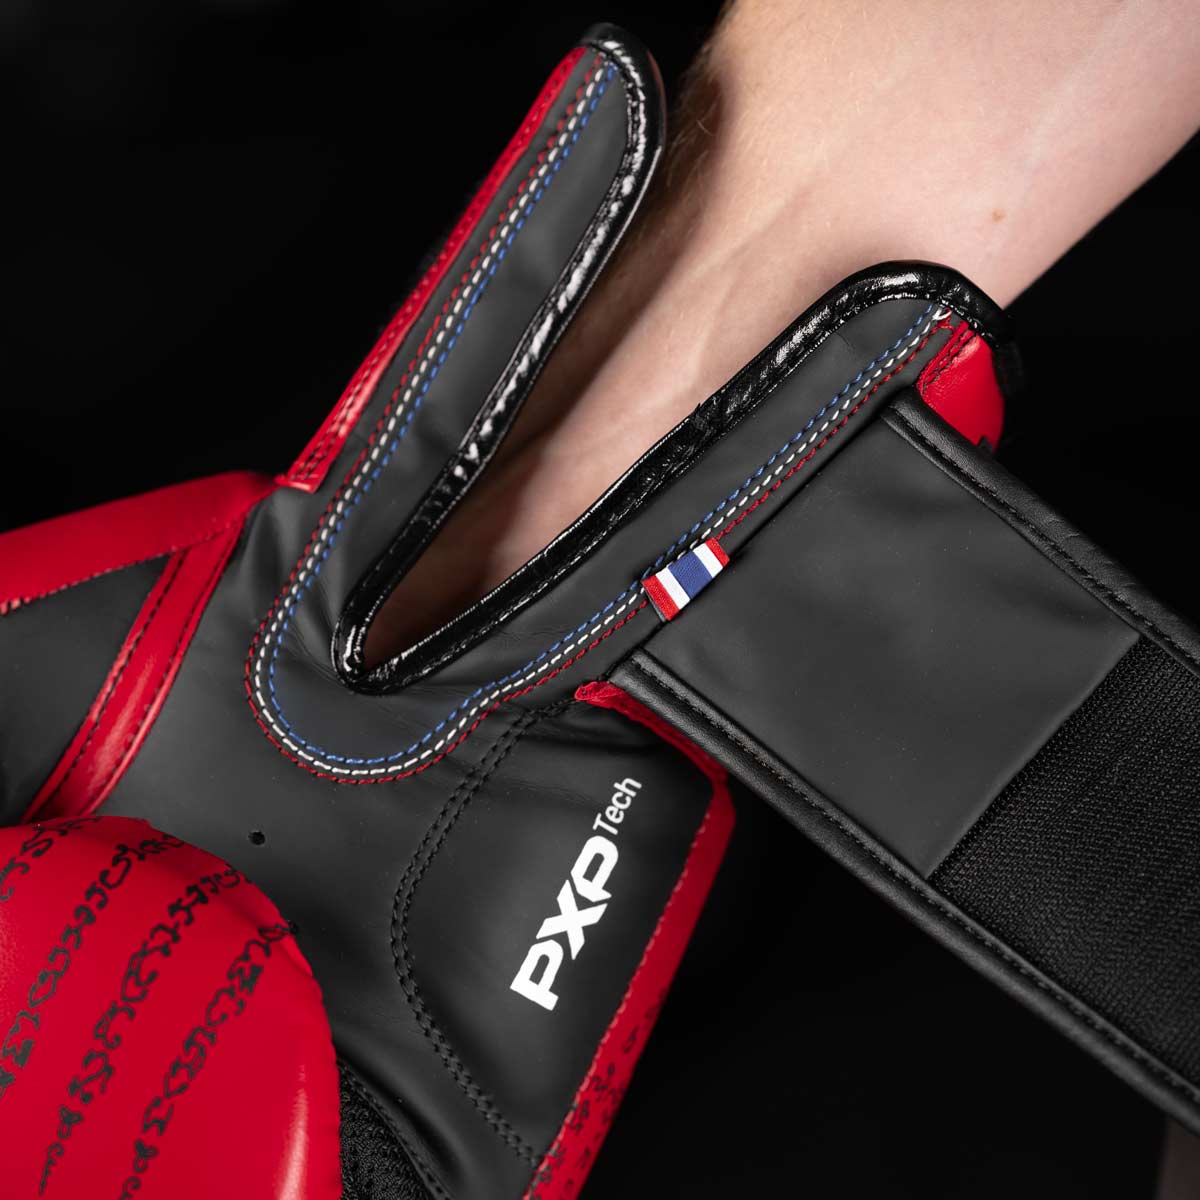 Die Phantom Muay Thai Boxhandschuhe verfügen über eine hervorragende Verarbeitung und viele kleine Details. Hier in der Farbe Rot/Sschwarz.